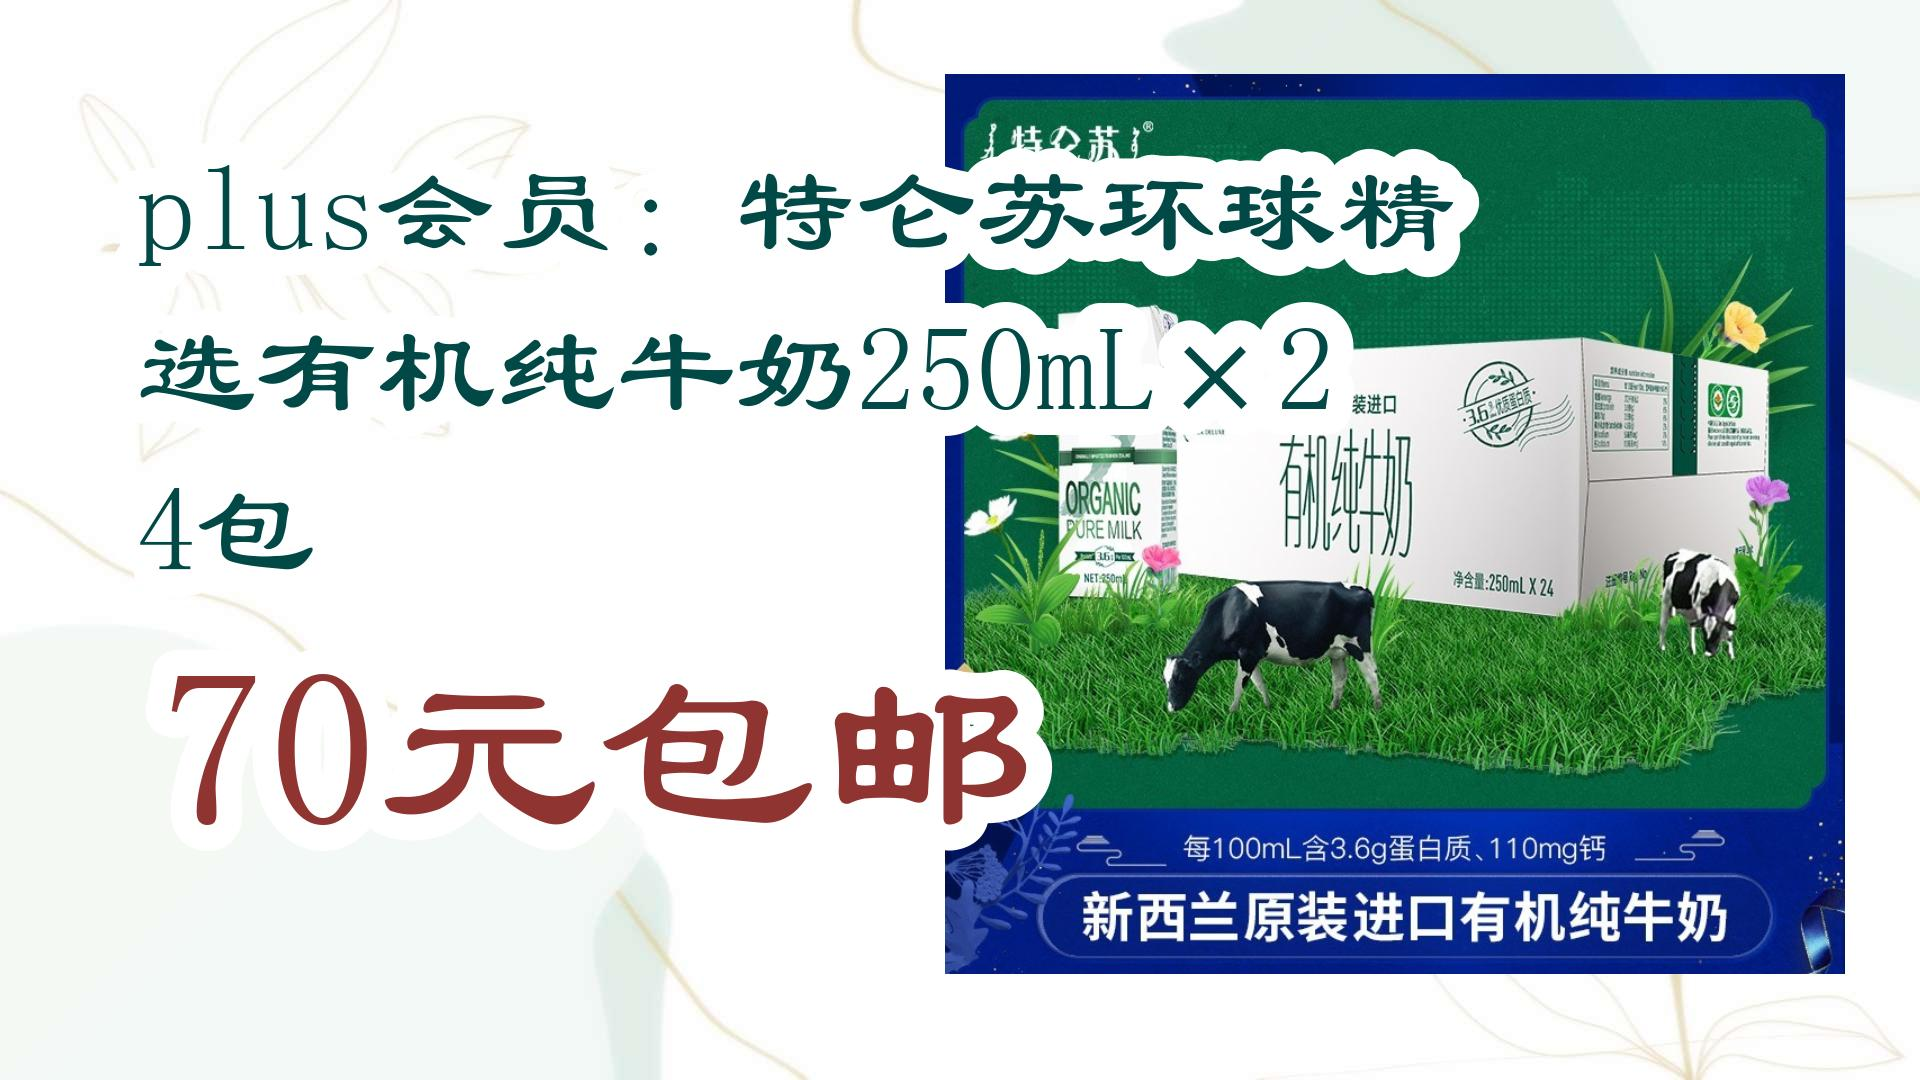 【好价优惠】plus会员:特仑苏环球精选有机纯牛奶250ml×24包 70元